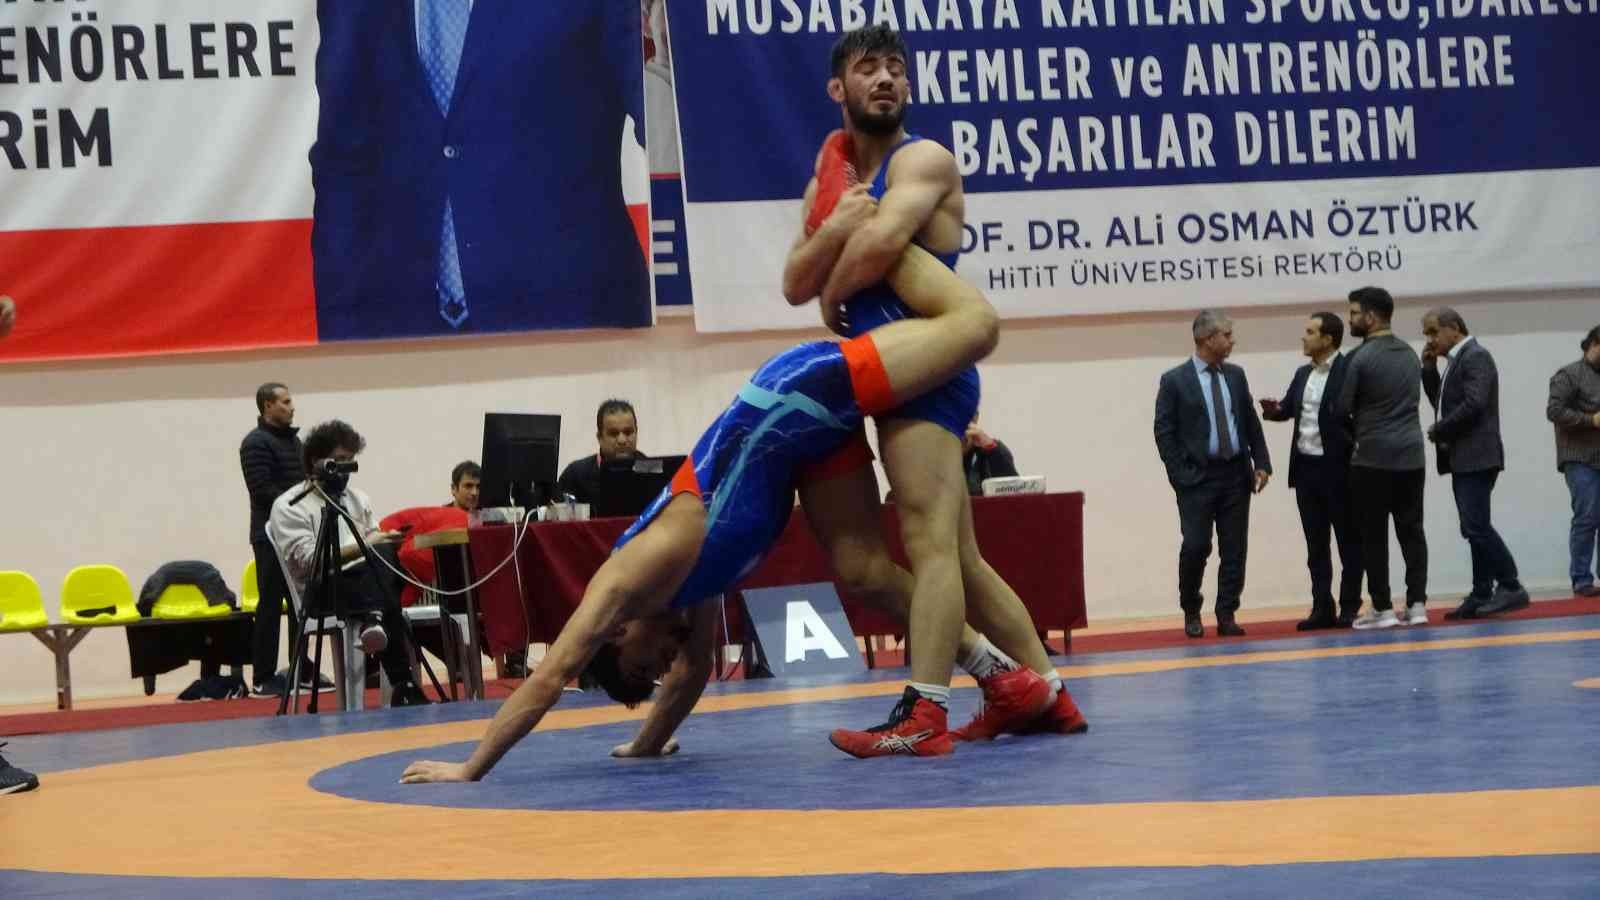 Türkiye U23 Serbest Güreş Şampiyonası başladı #corum